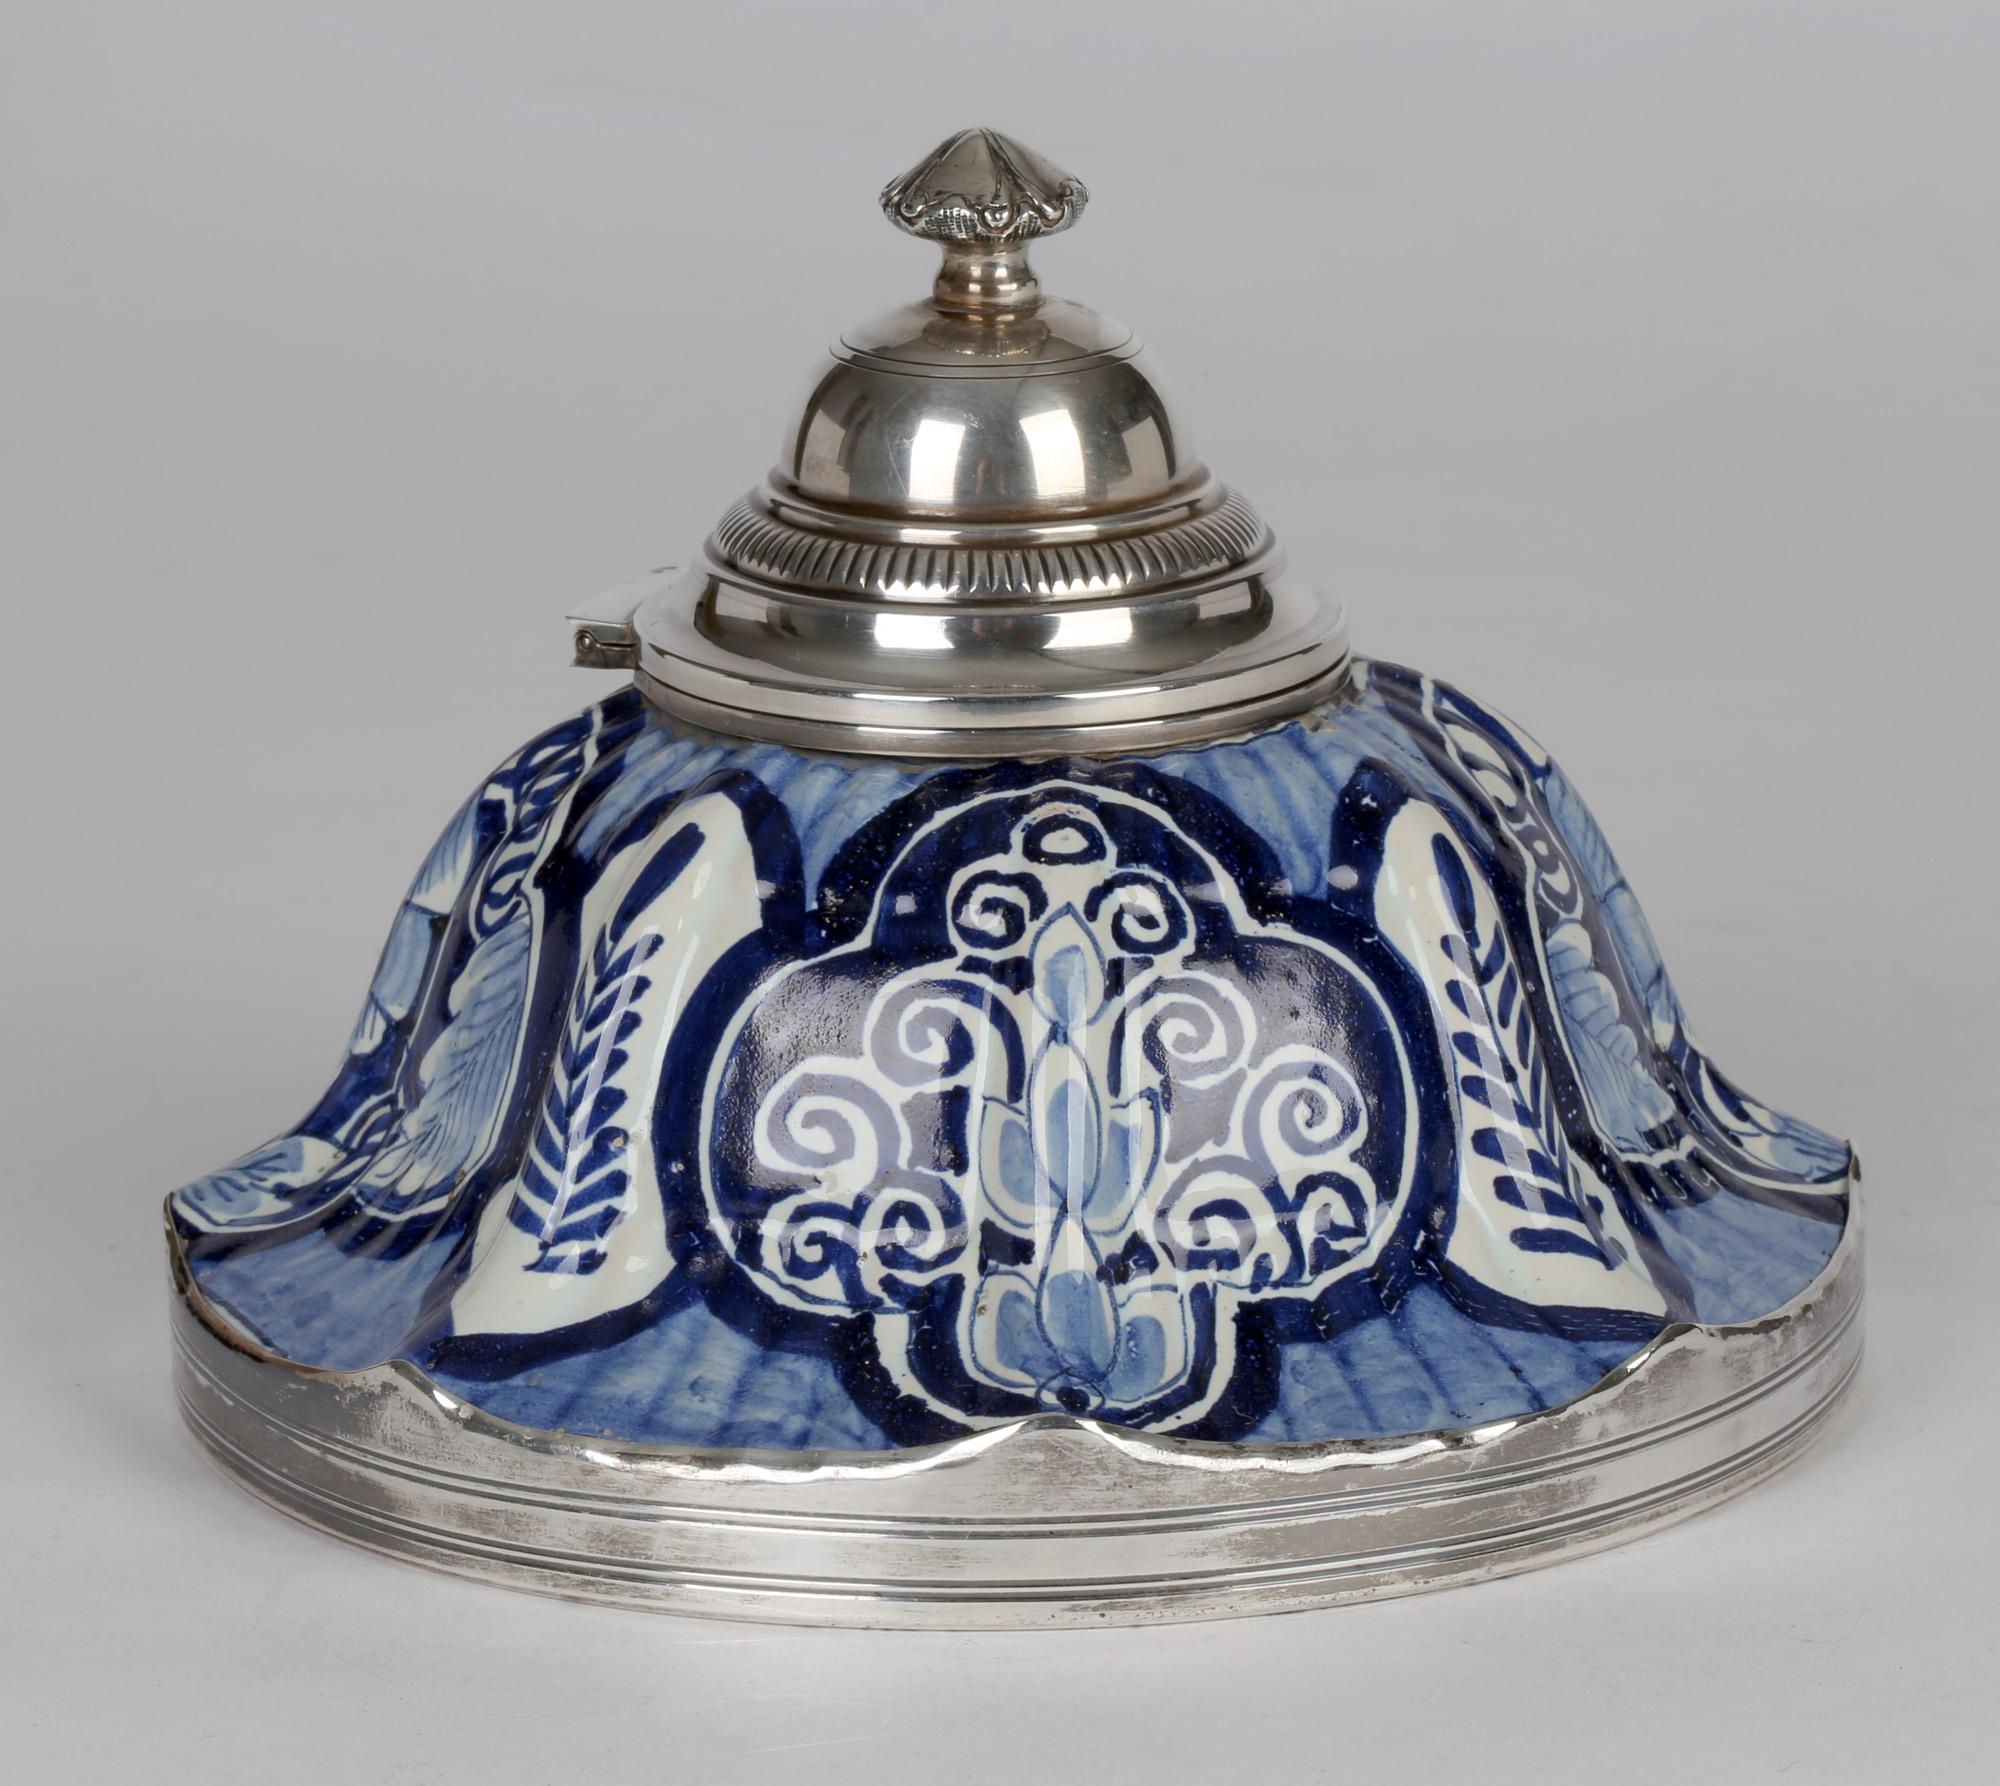 Ein ungewöhnliches, in Silber gefasstes französisches Fayence-Tintenfass aus dem 19. Jahrhundert, handbemalt mit blauen und weißen Motiven. Das gewölbte Tintenfass steht auf einem abgerundeten Sockel mit hochwertigem Silberrand. Der geformte und